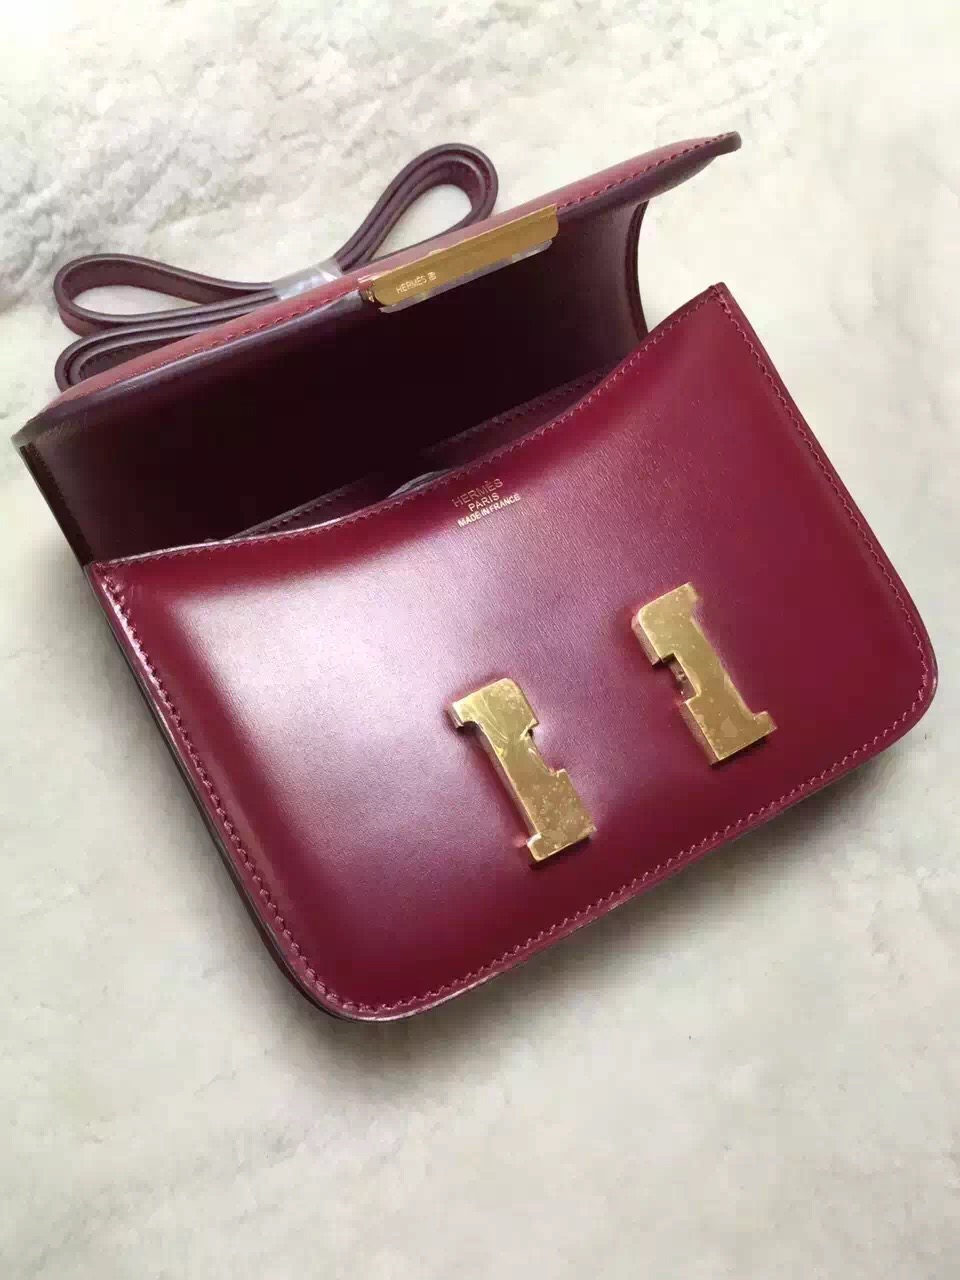 Hermes original box leather small constance bag C019 bordeaux